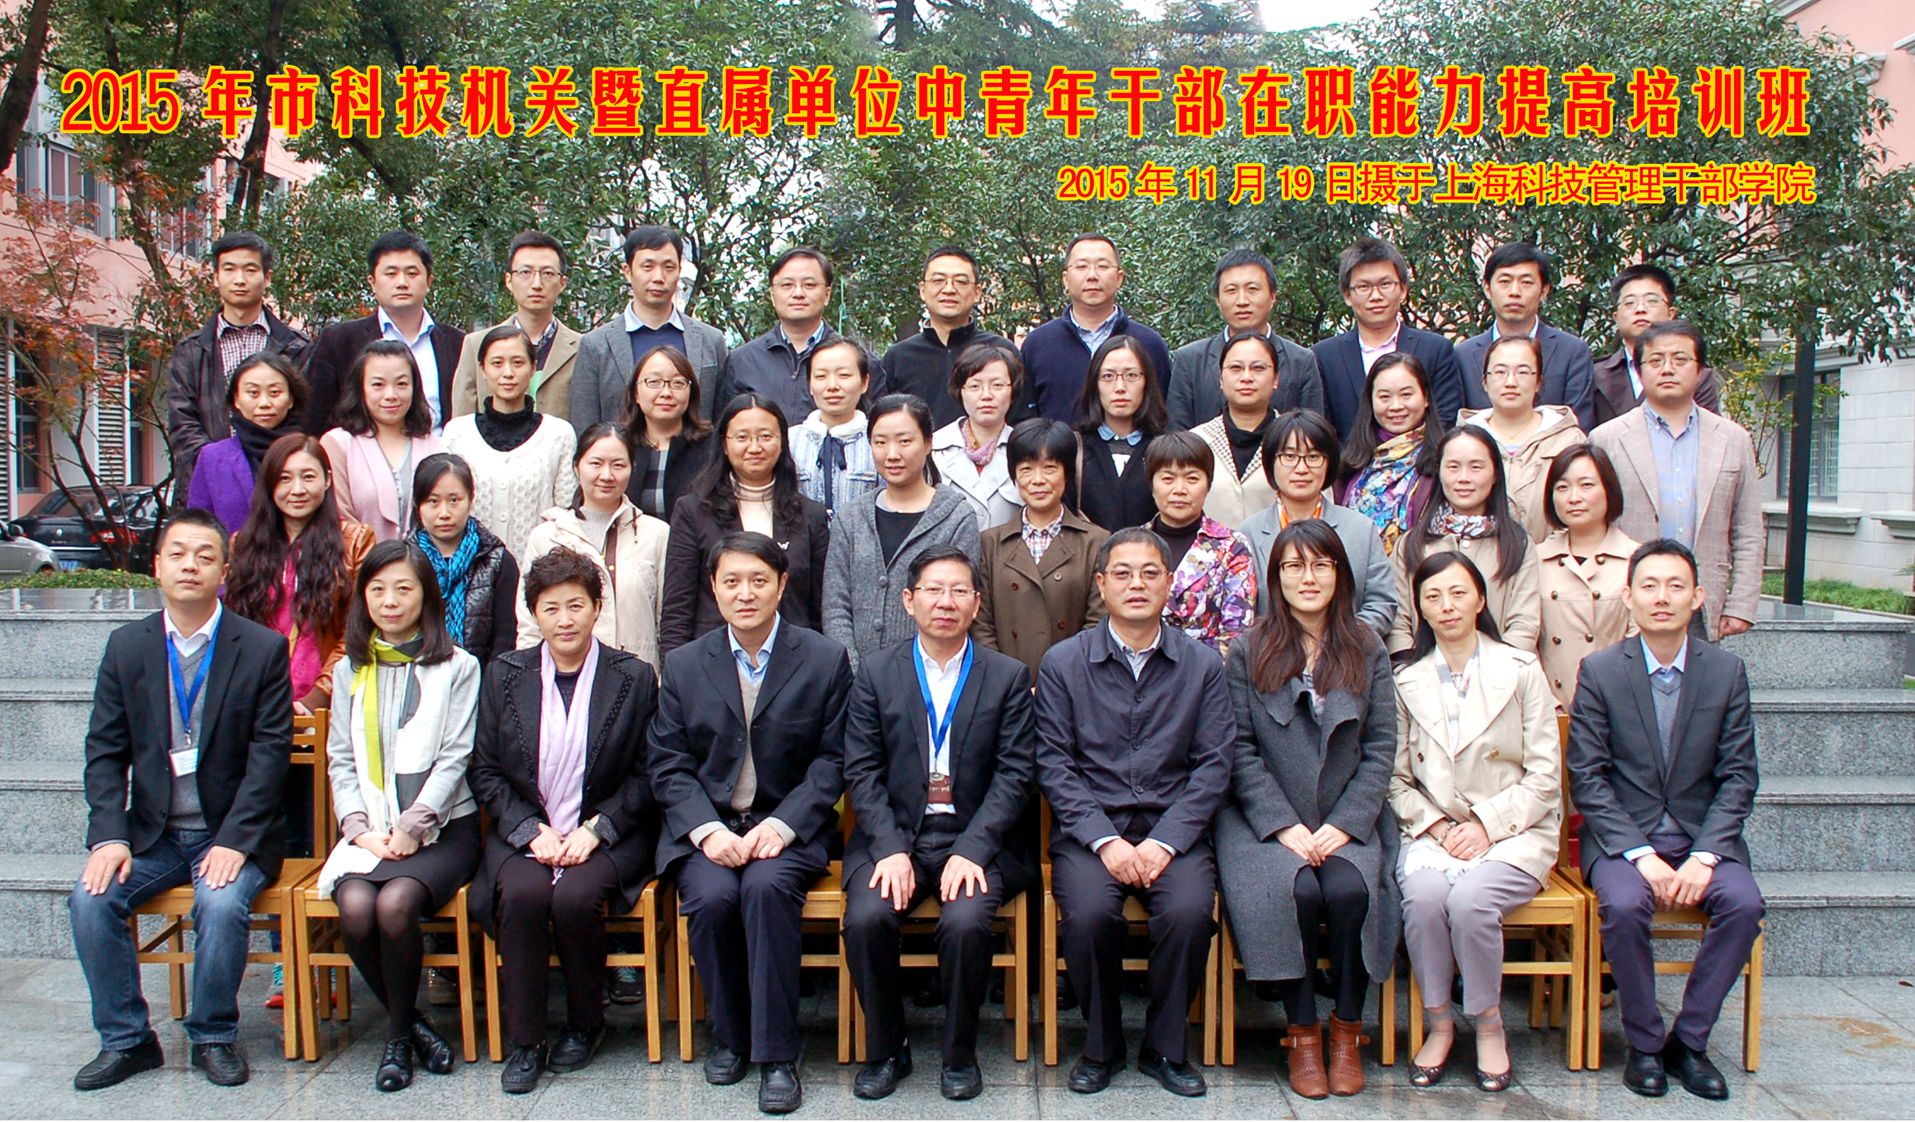 我院举行2015届高职生毕业典礼 - 学历教育 - 学历教育 - 上海科技管理干部学院